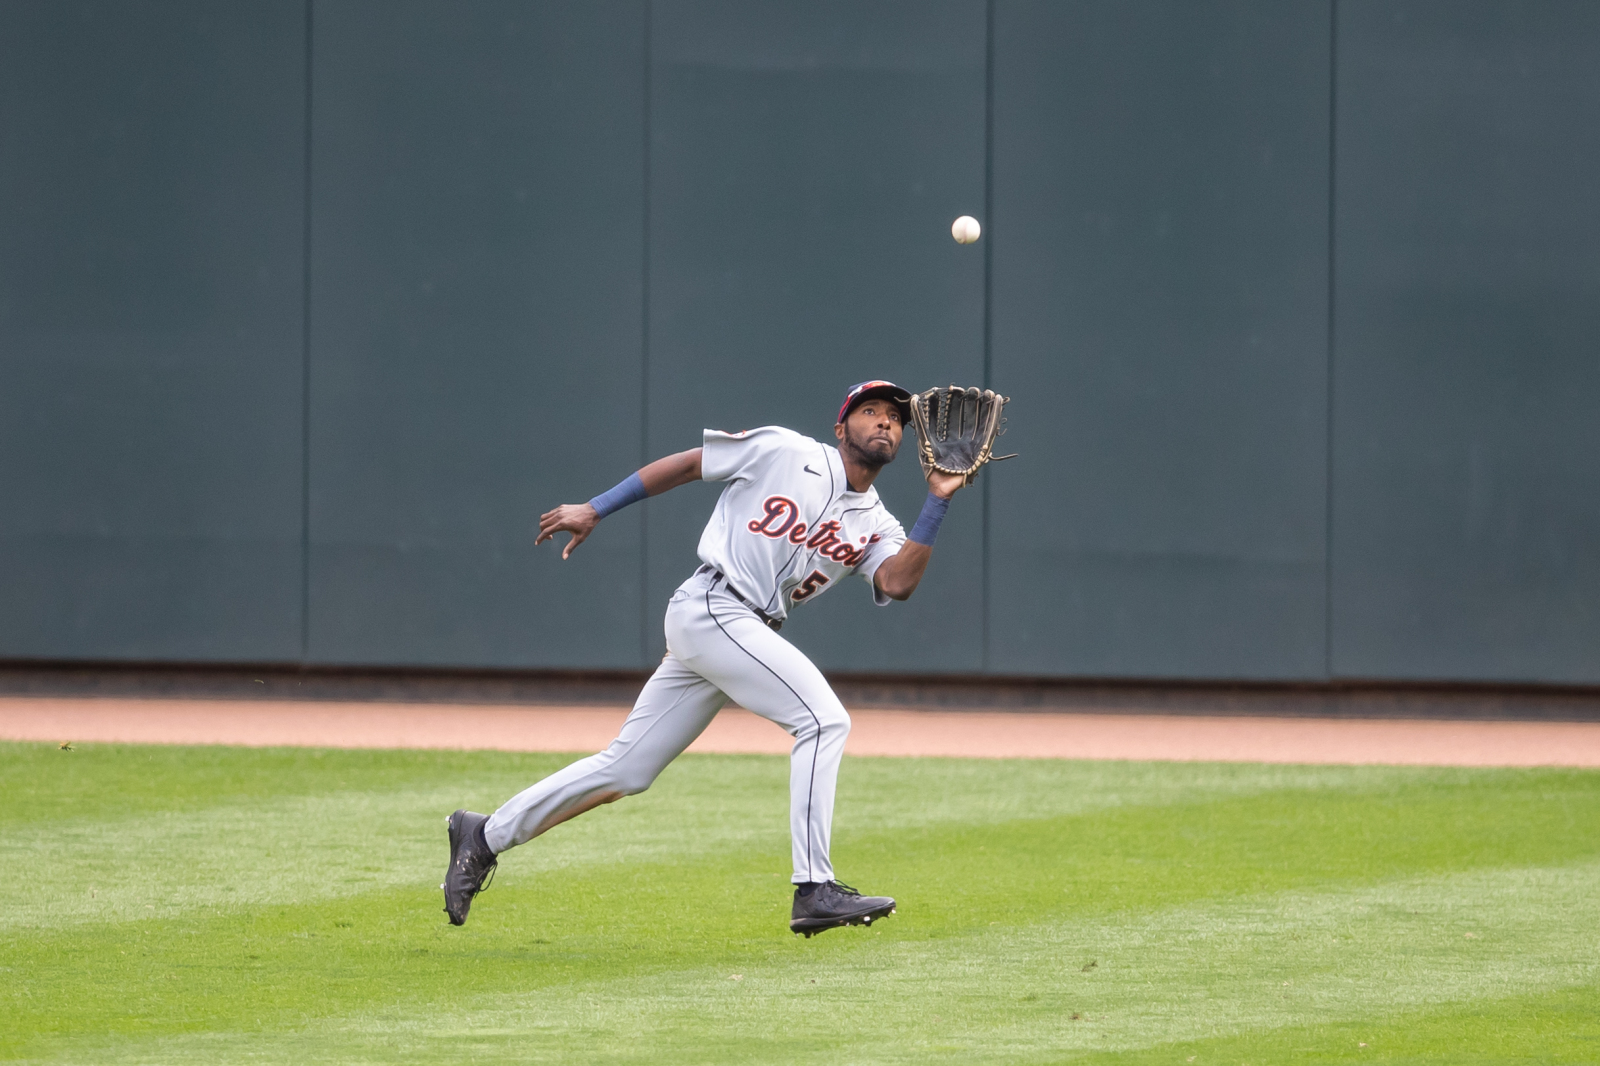 Travis Demeritte hits an INSIDE-THE-PARK Home Run! Atlanta Braves